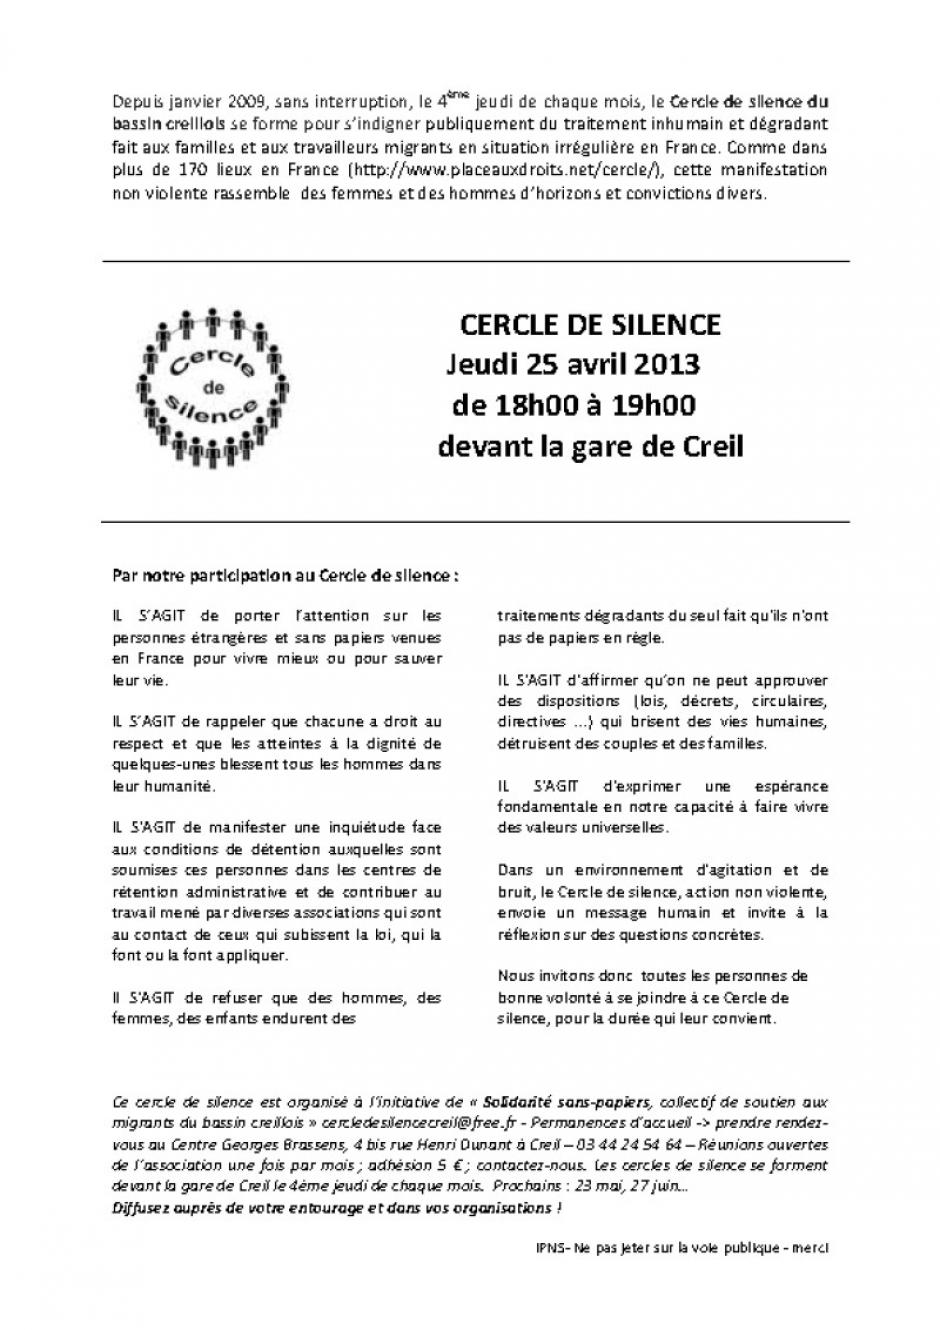 25 avril, Creil - Solidarité sans-papiers-53e cercle de silence